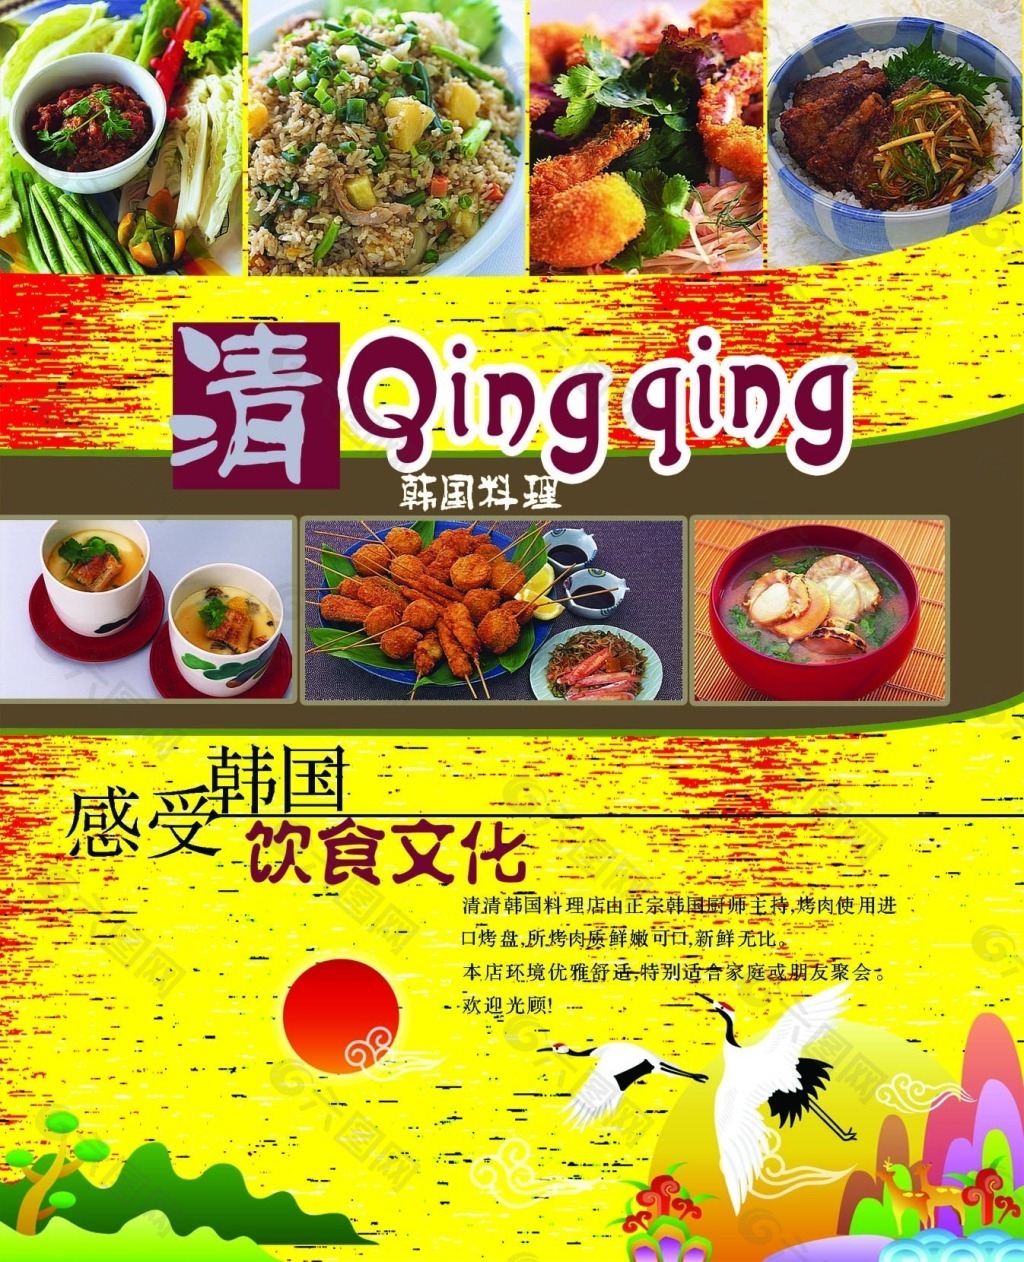 韩国美食文化宣传海报